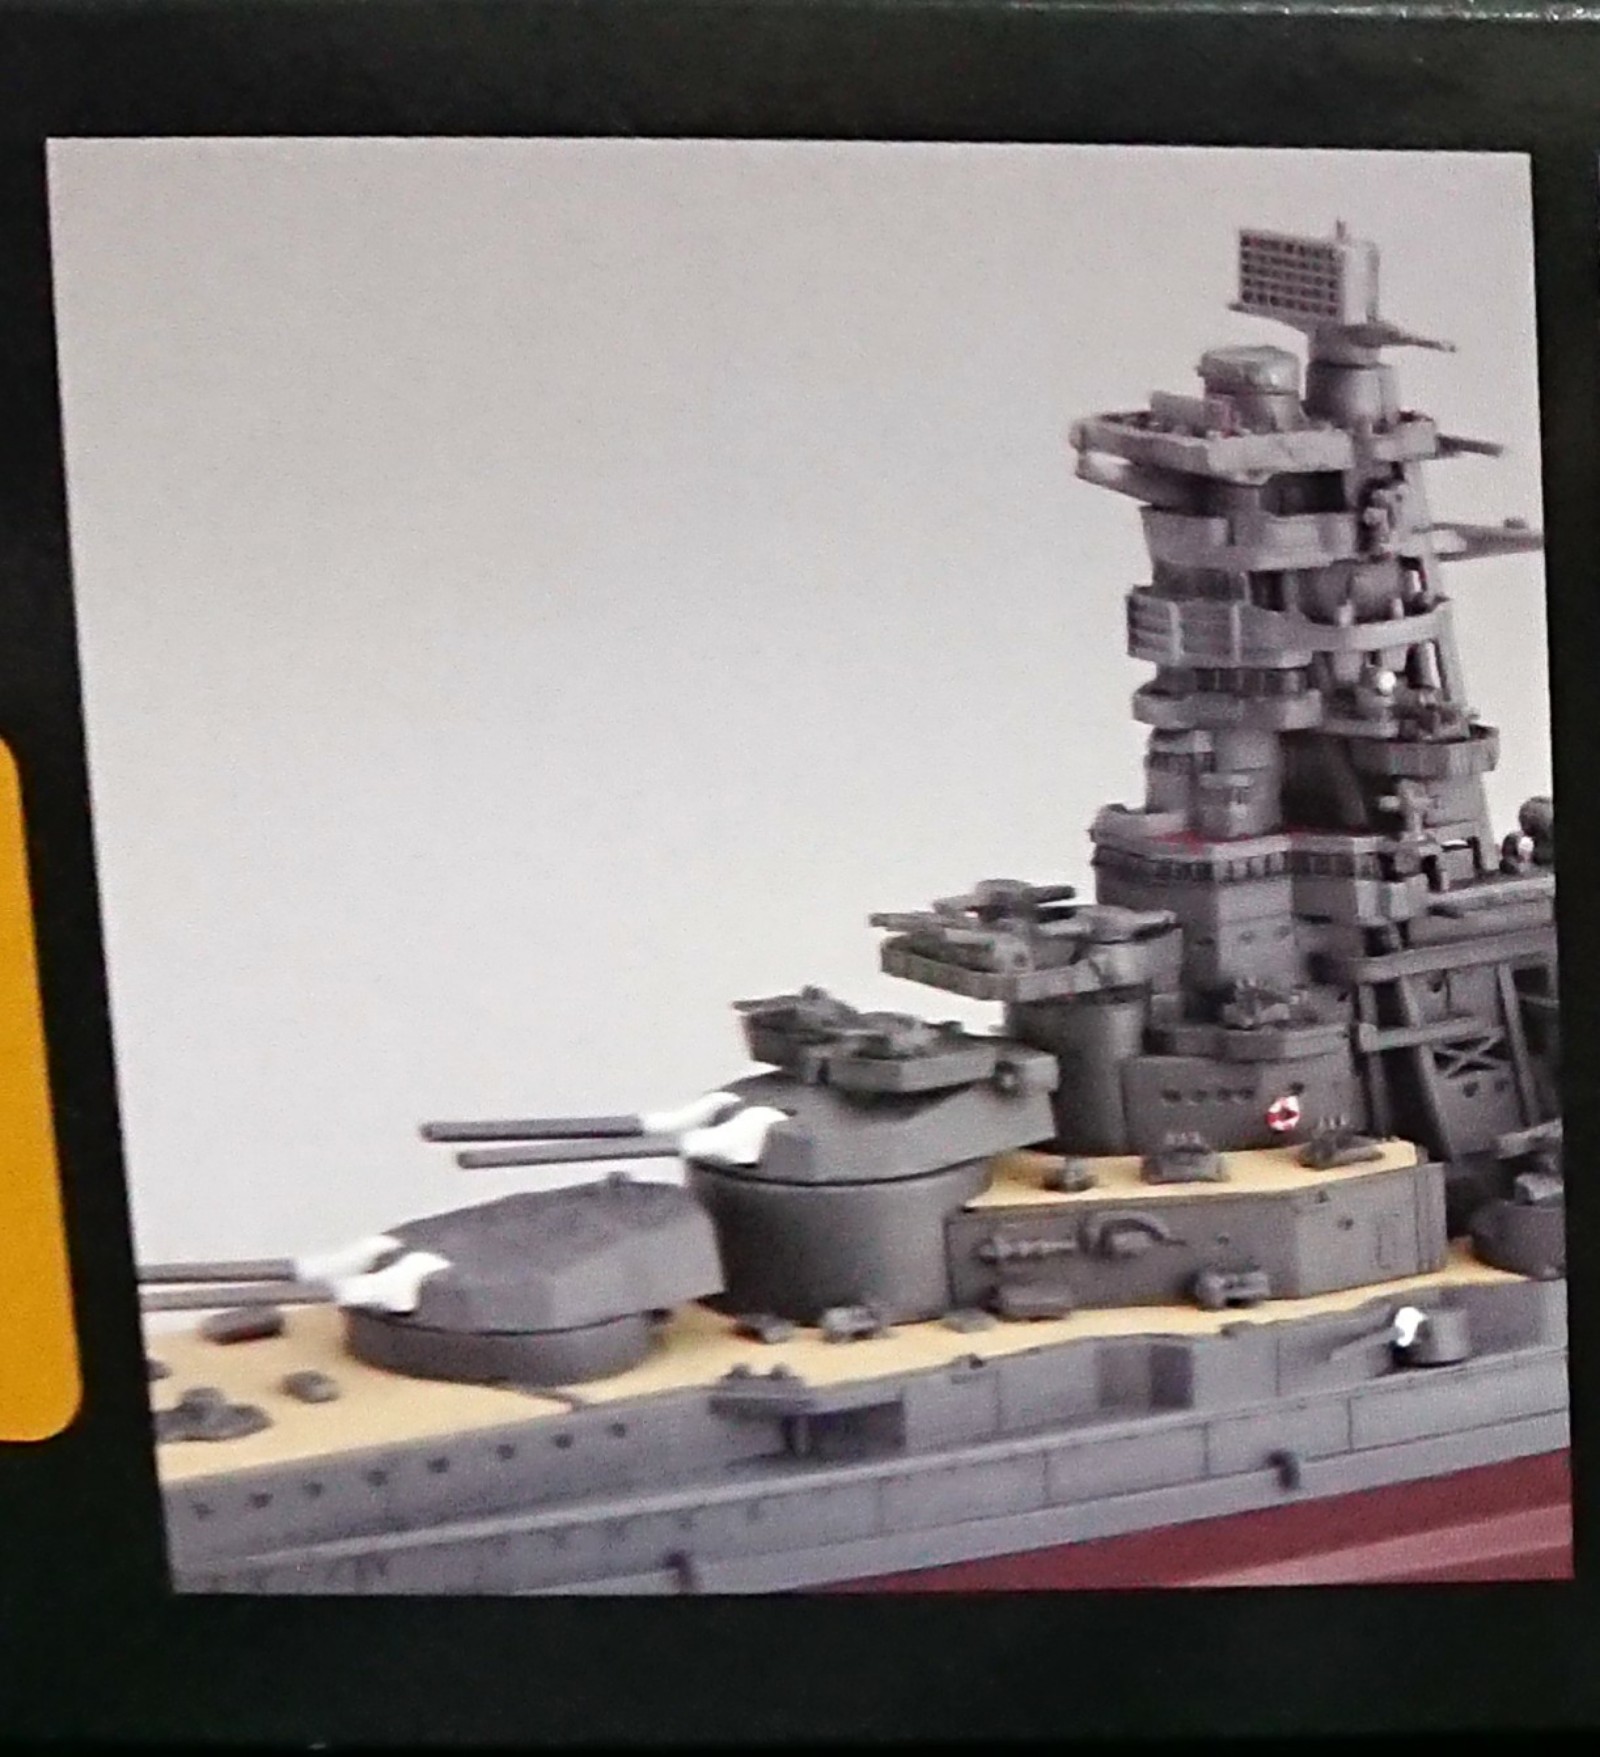 戦艦プラモデル 艦船模型 を作りたい初心者の方にオススメのフジミ1 700艦nextシリーズを紹介 初心者プラモデル道